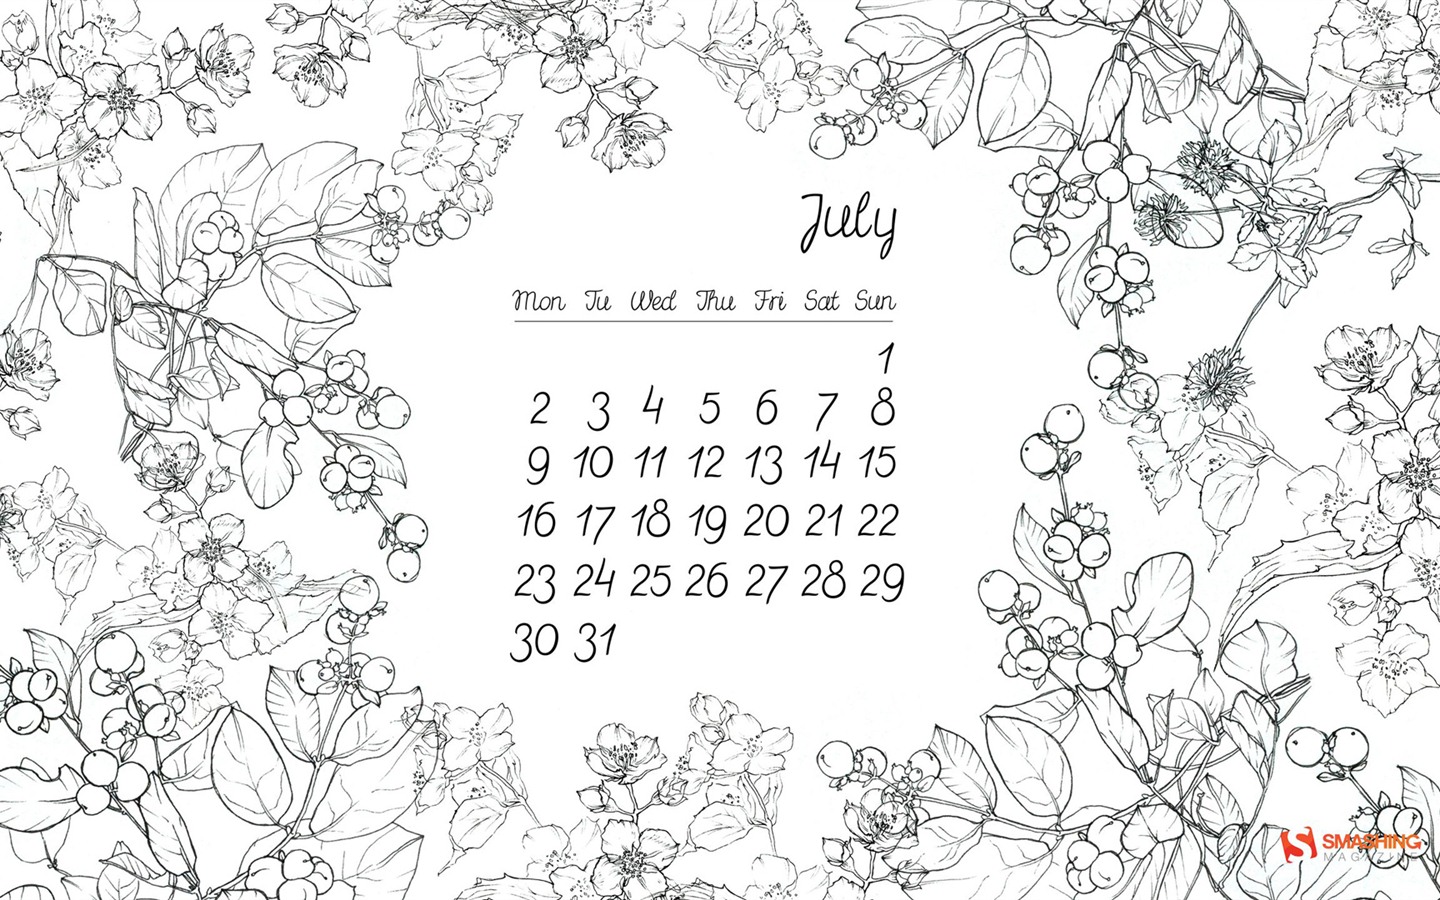 July 2012 Calendar wallpapers (1) #14 - 1440x900